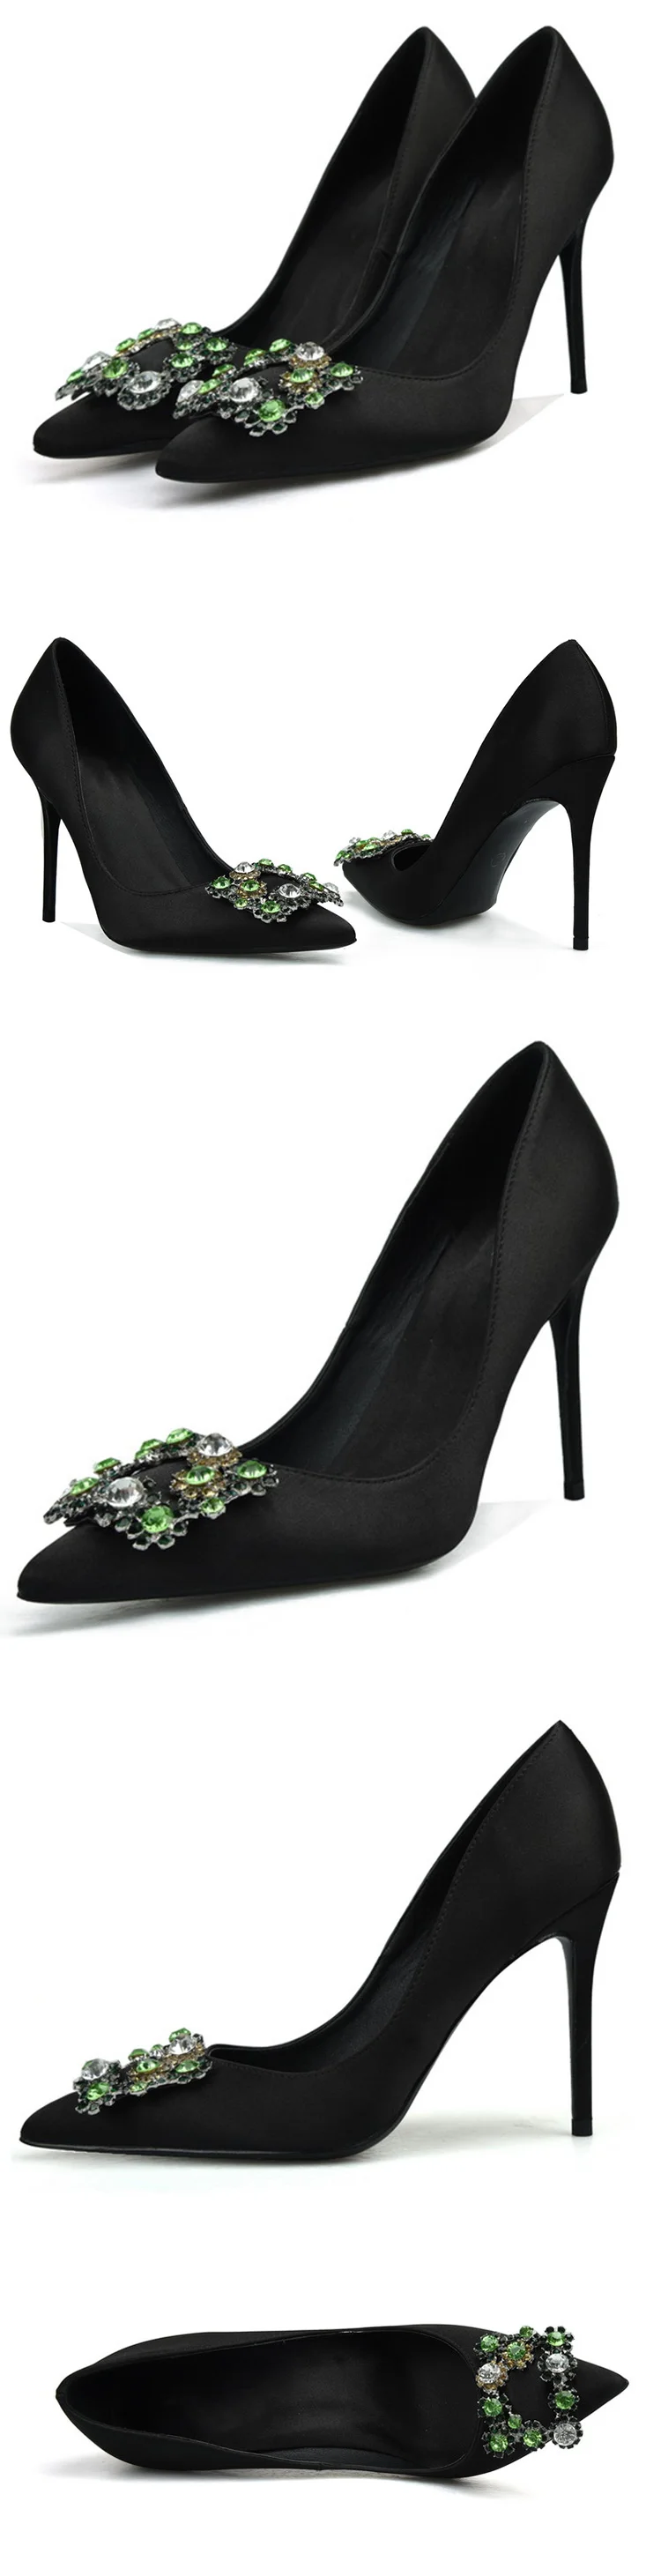 WEIQIAONA/Новинка года; брендовая дизайнерская Роскошная обувь с украшением в виде кристаллов; женские шелковые свадебные модельные туфли с острым носком на высоком каблуке; большие размеры 33-42